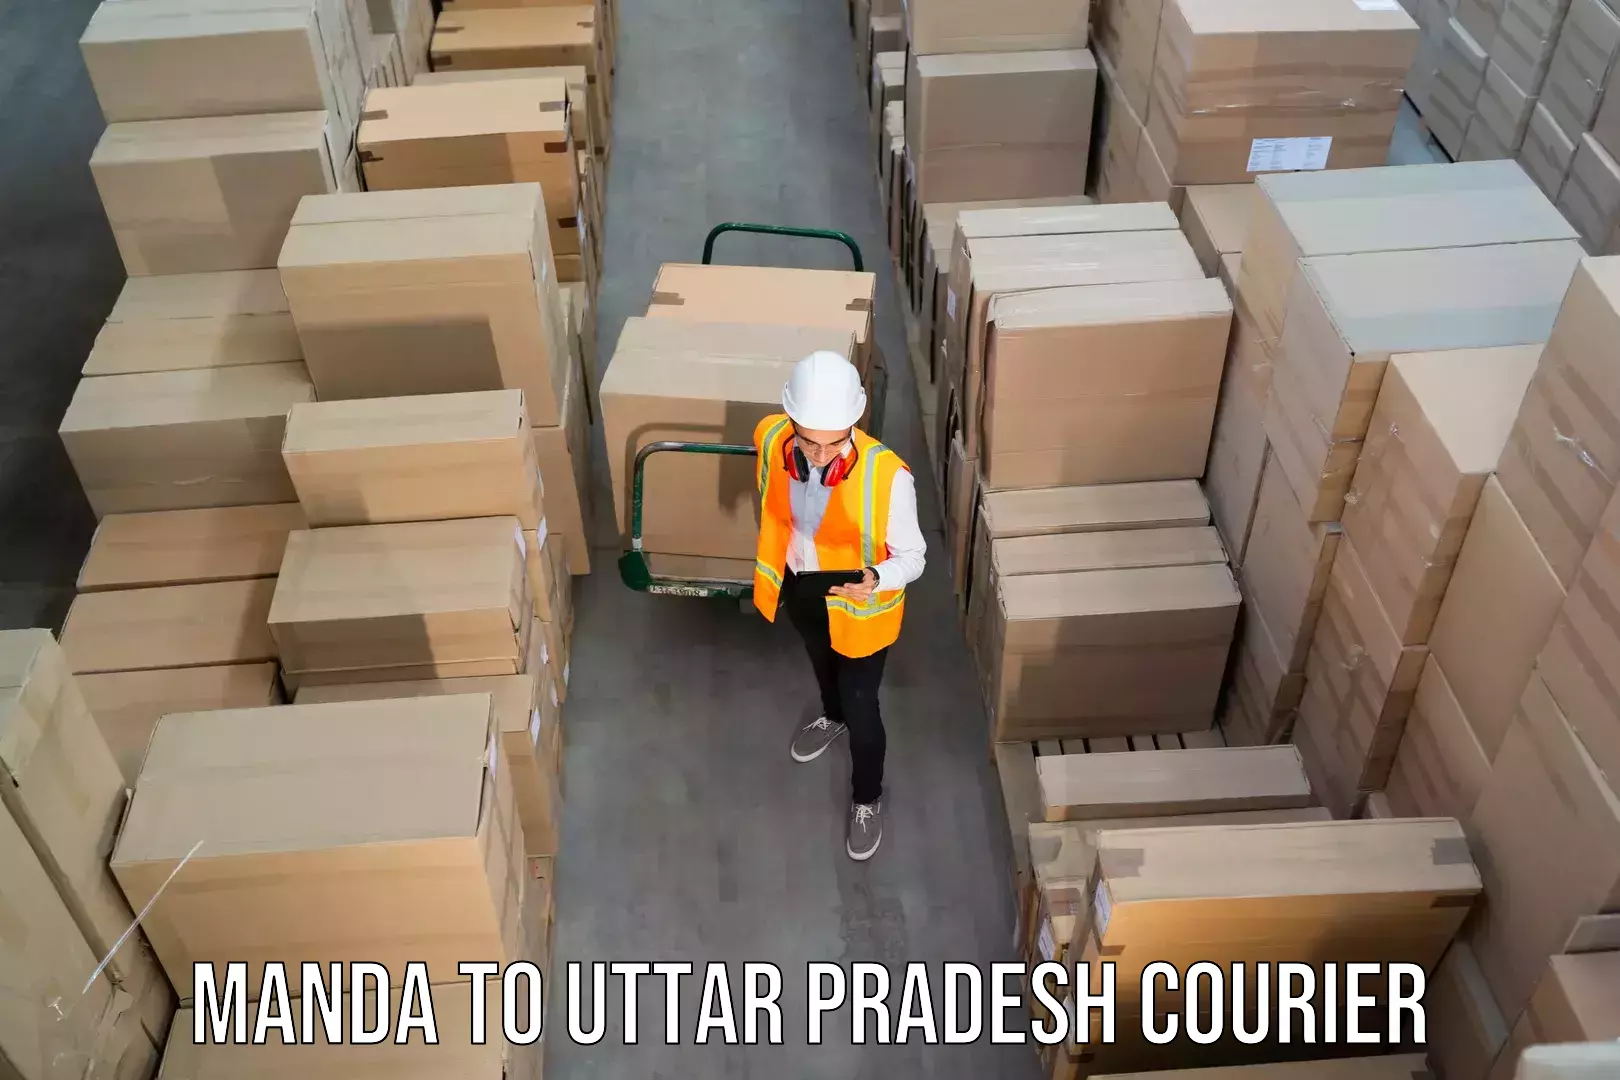 Courier service efficiency Manda to Afzalgarh